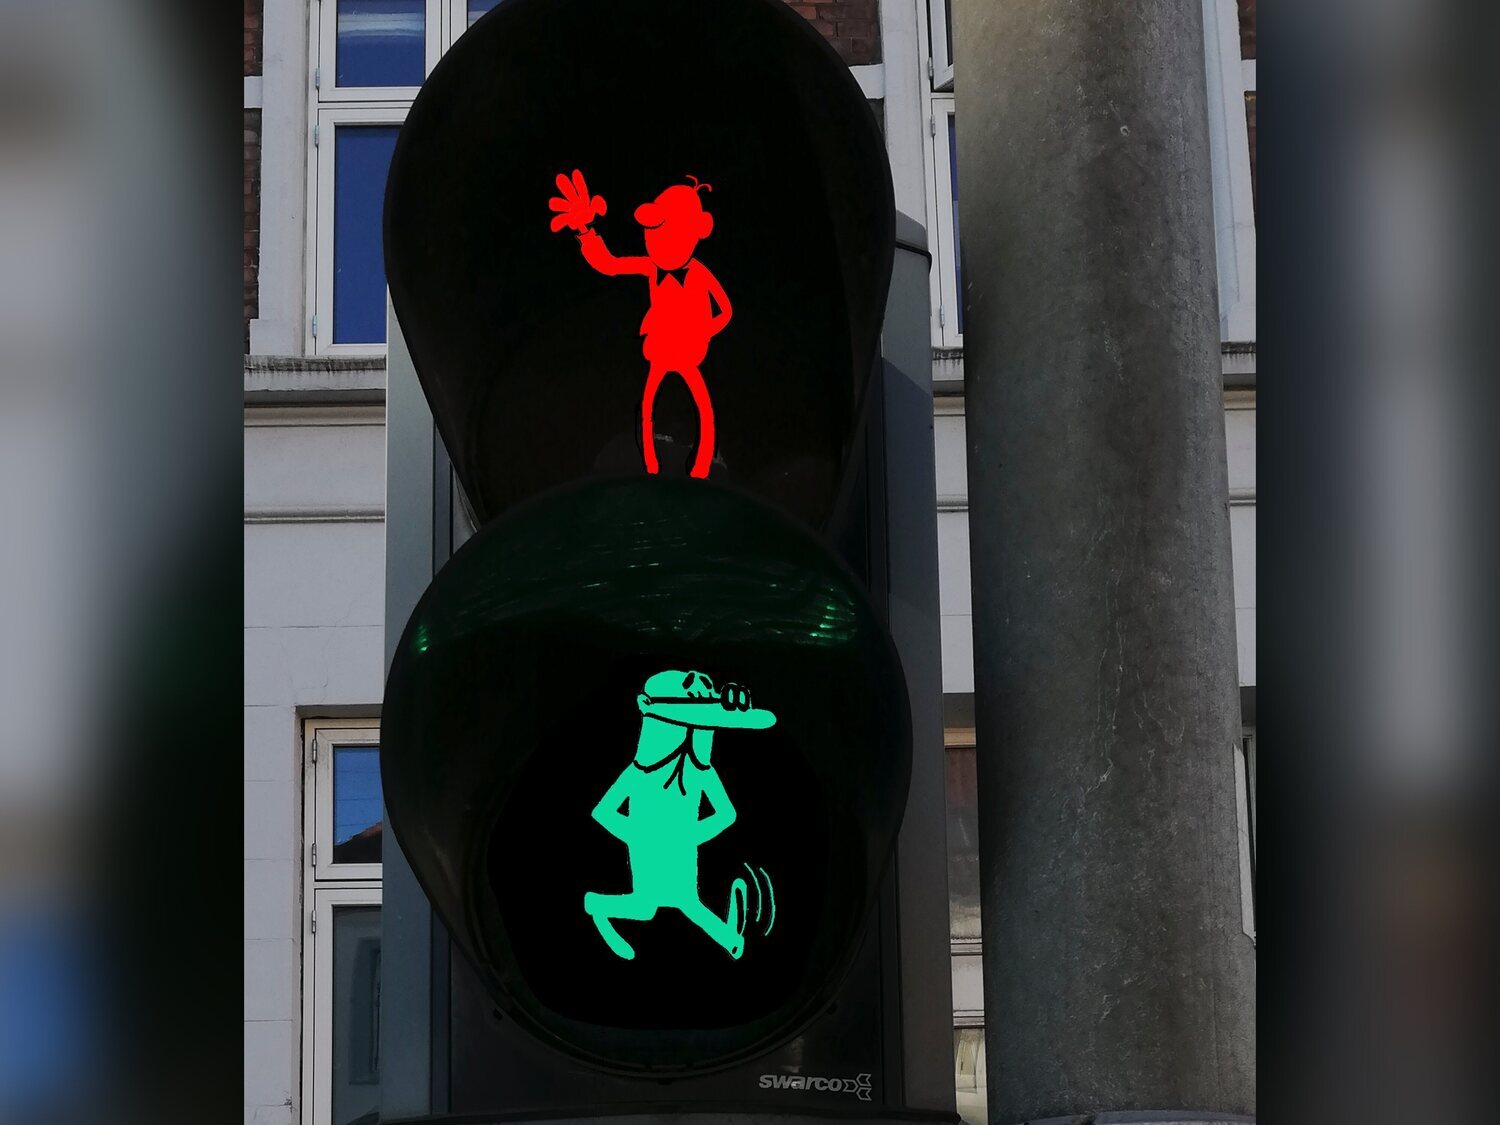 Barcelona instalará semáforos de Mortadelo y Filemón: dónde encontrarlos